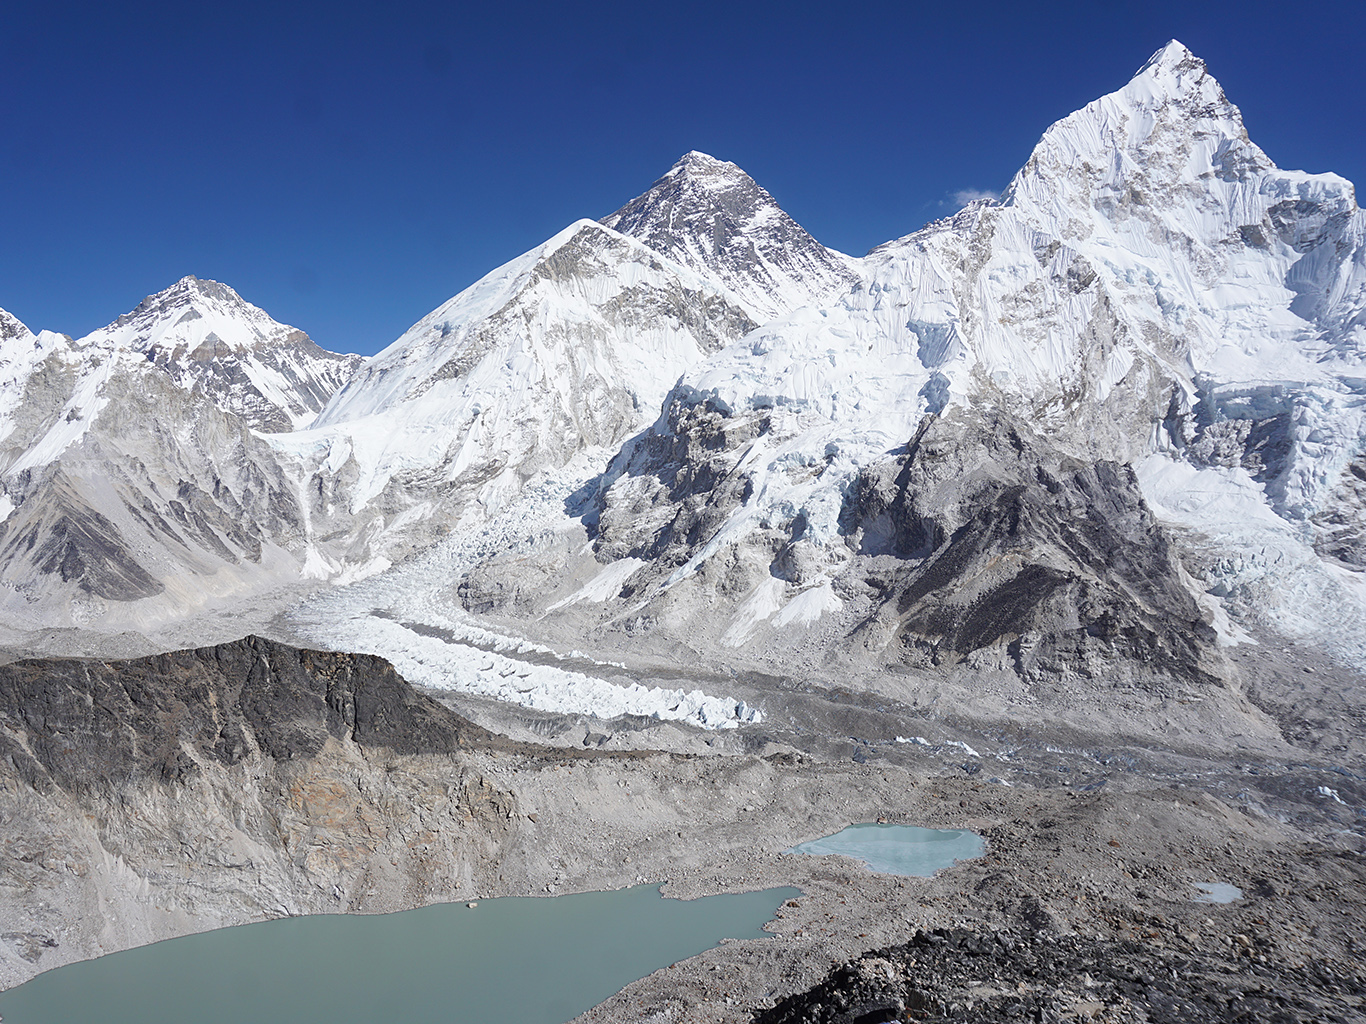 Výhled z Kala Pattaru na pyramidu Everestu, vpravo zub vrcholu Nuptse, vlevo Khumbutse Peak